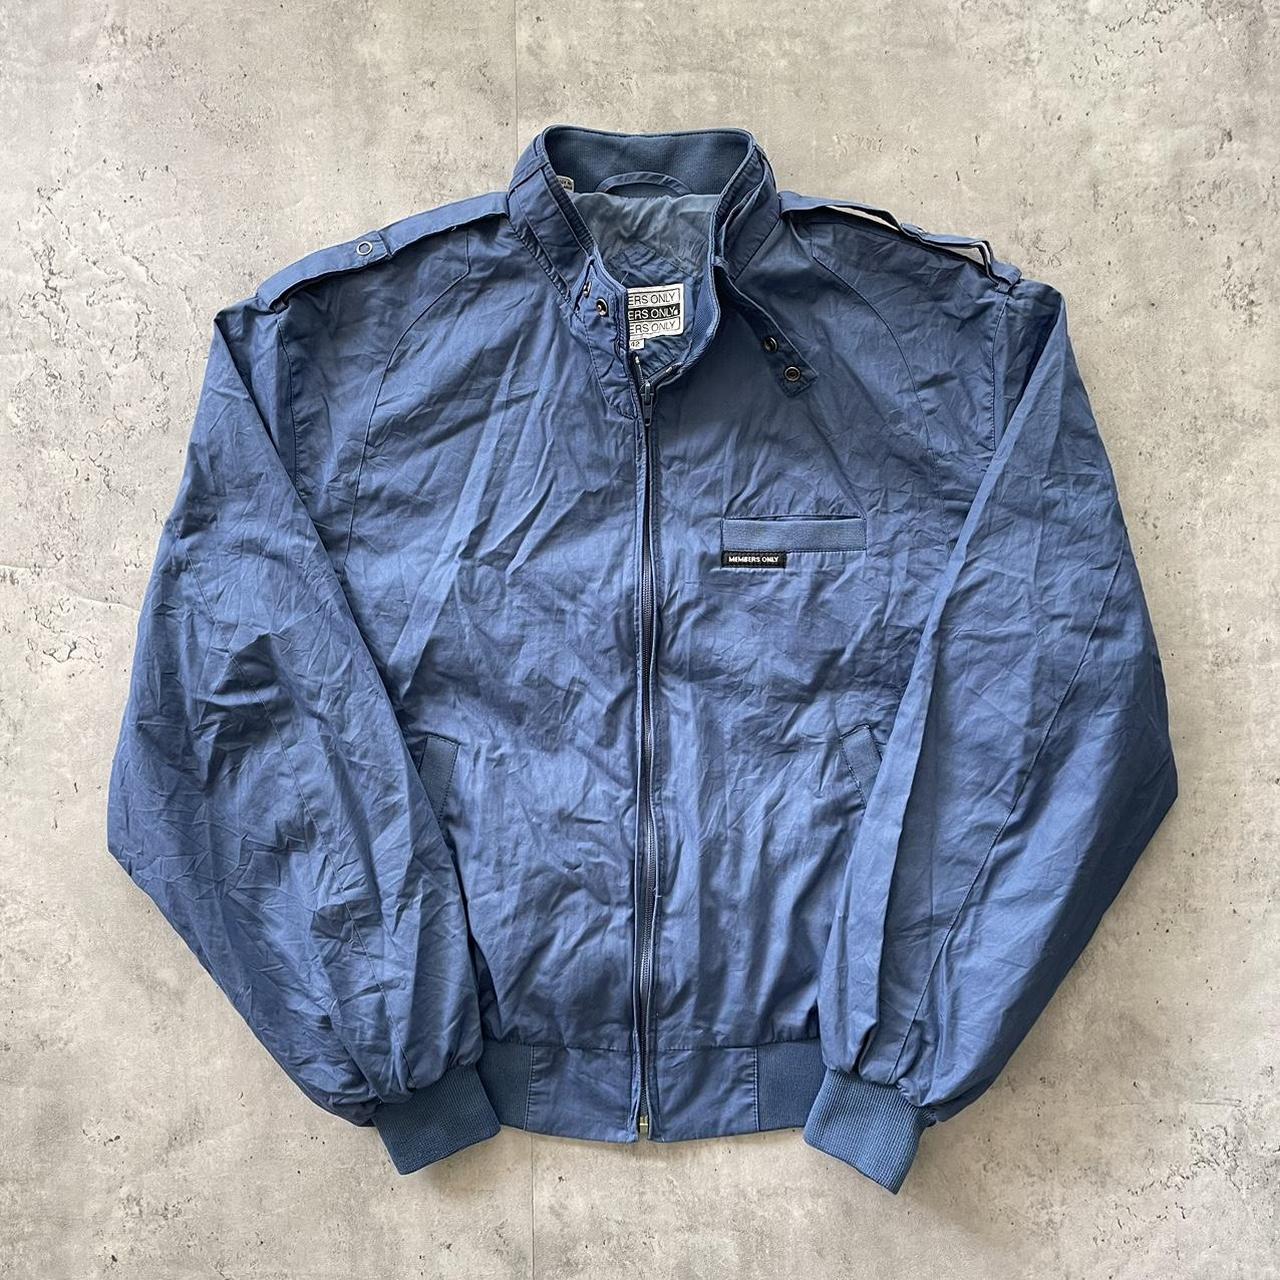 Vintage members only jacket 80s blue zip up... - Depop